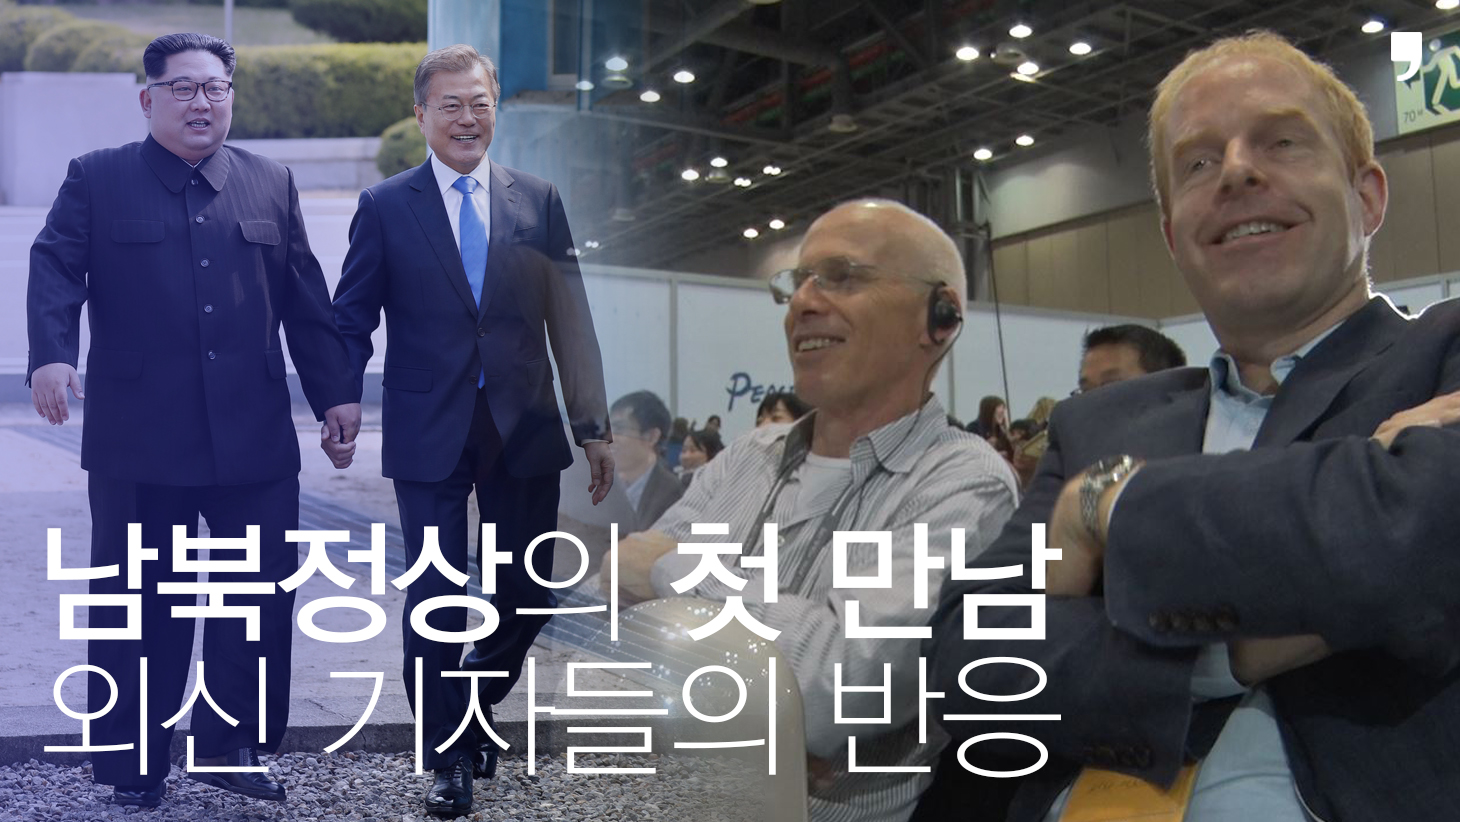 남북정상의 첫 만남, 외신 기자들의 반응. 서울신문